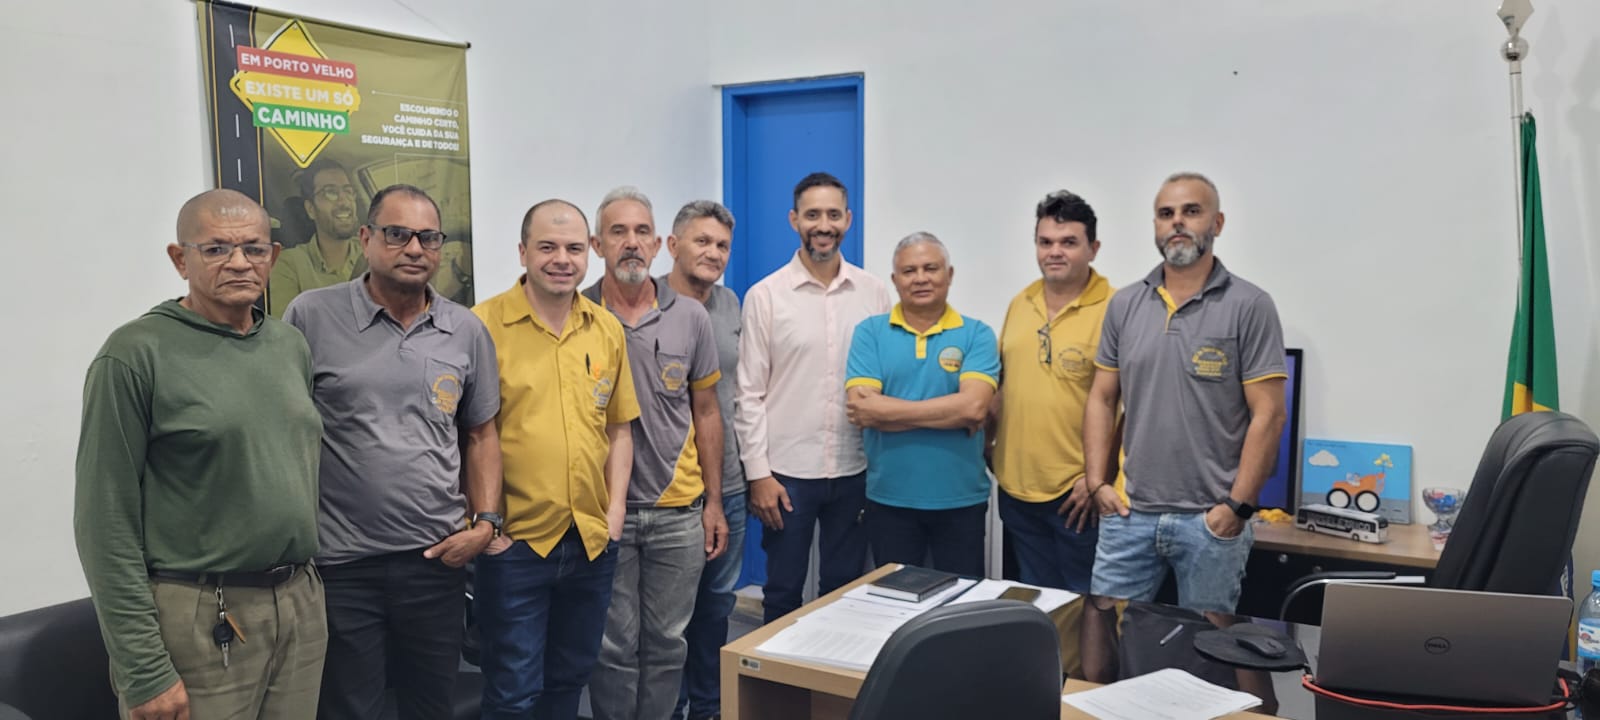 LEI DO TAXI: Projeto que altera o serviço de taxi de Porto Velho é retirado de pauta 